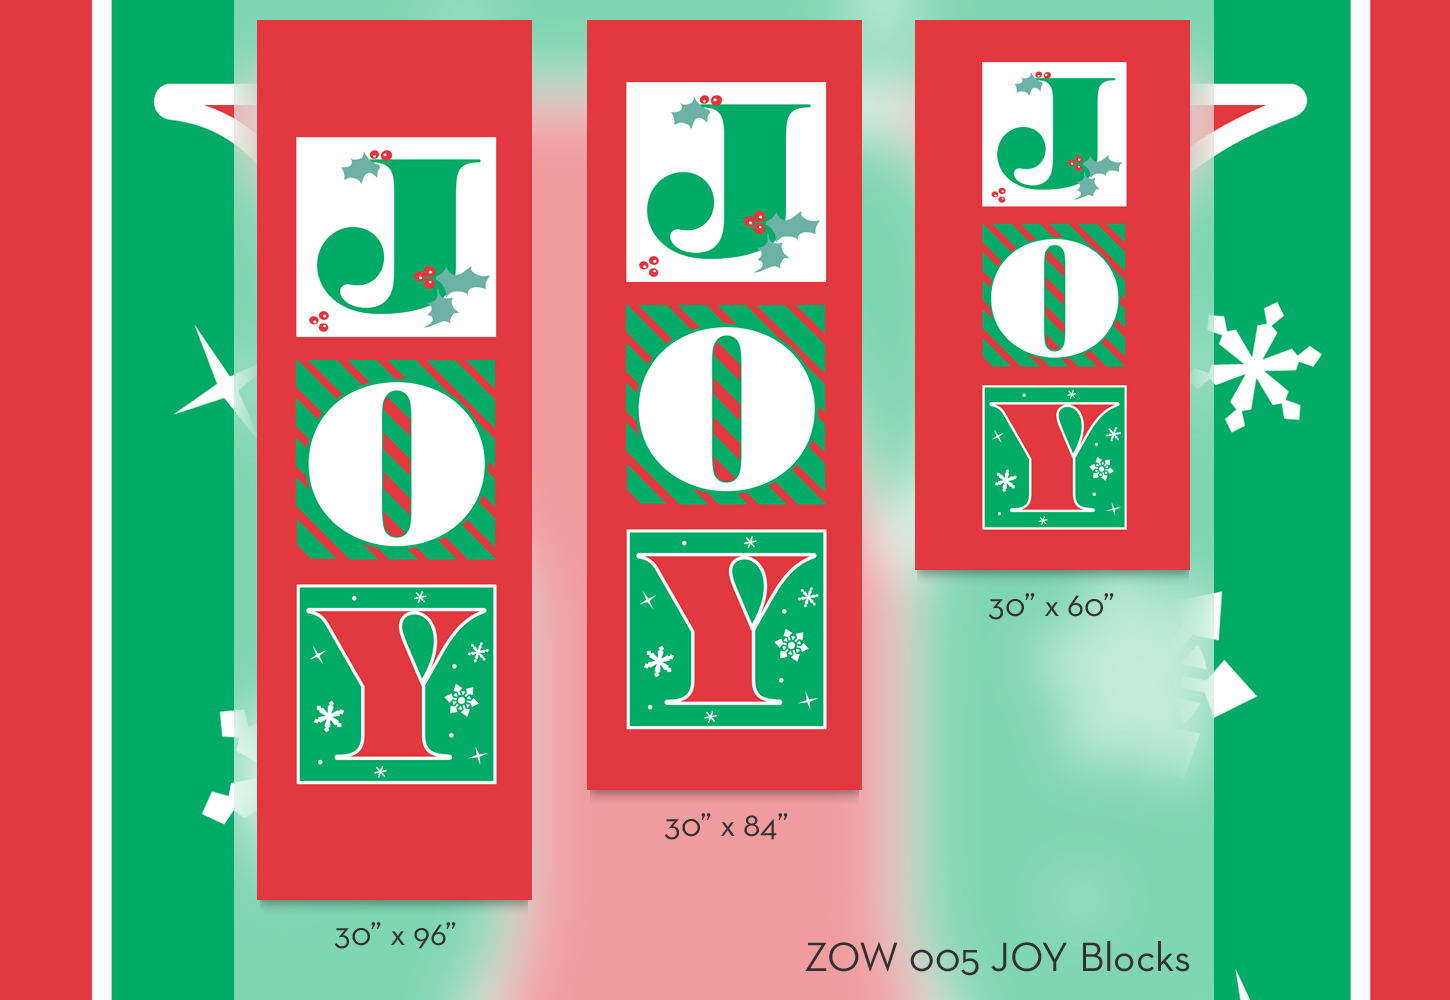 ZOW 005 JOY Blocks